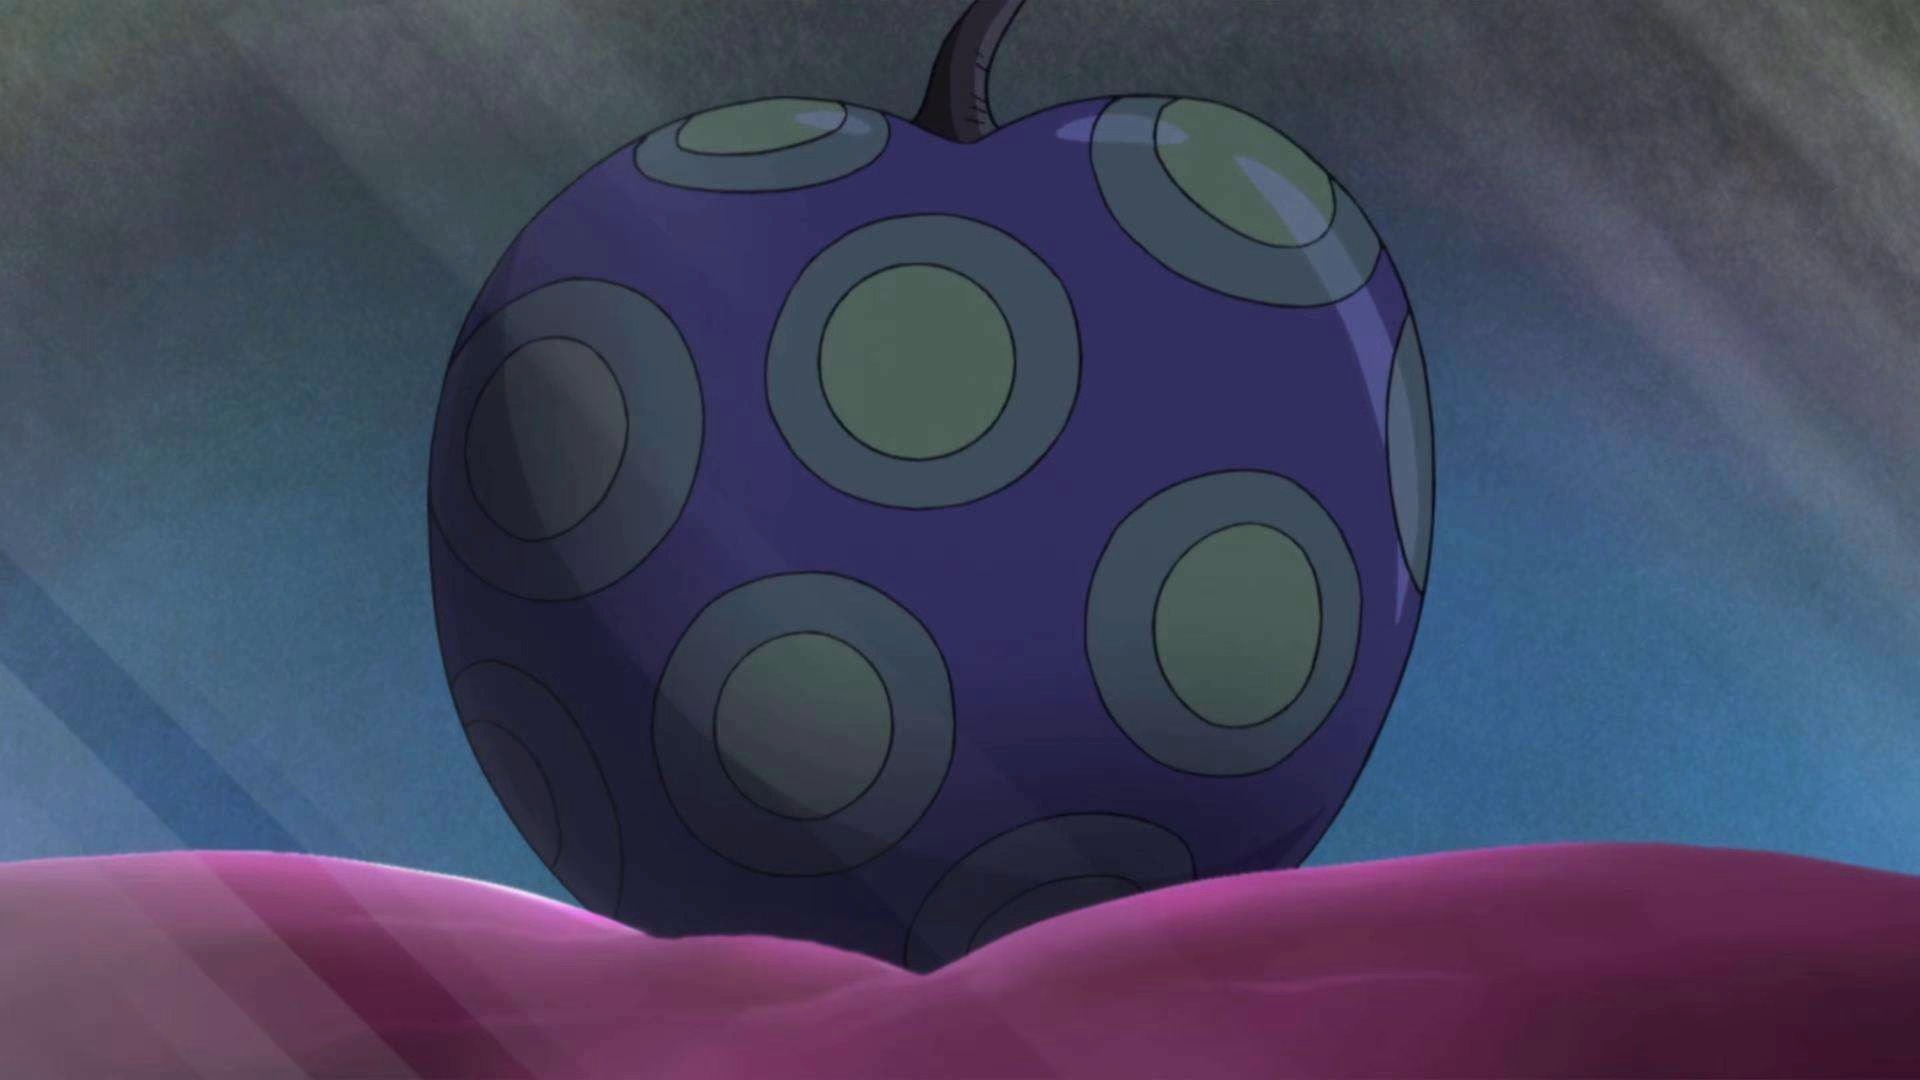 Qual fruta divina do One Piece você teria?